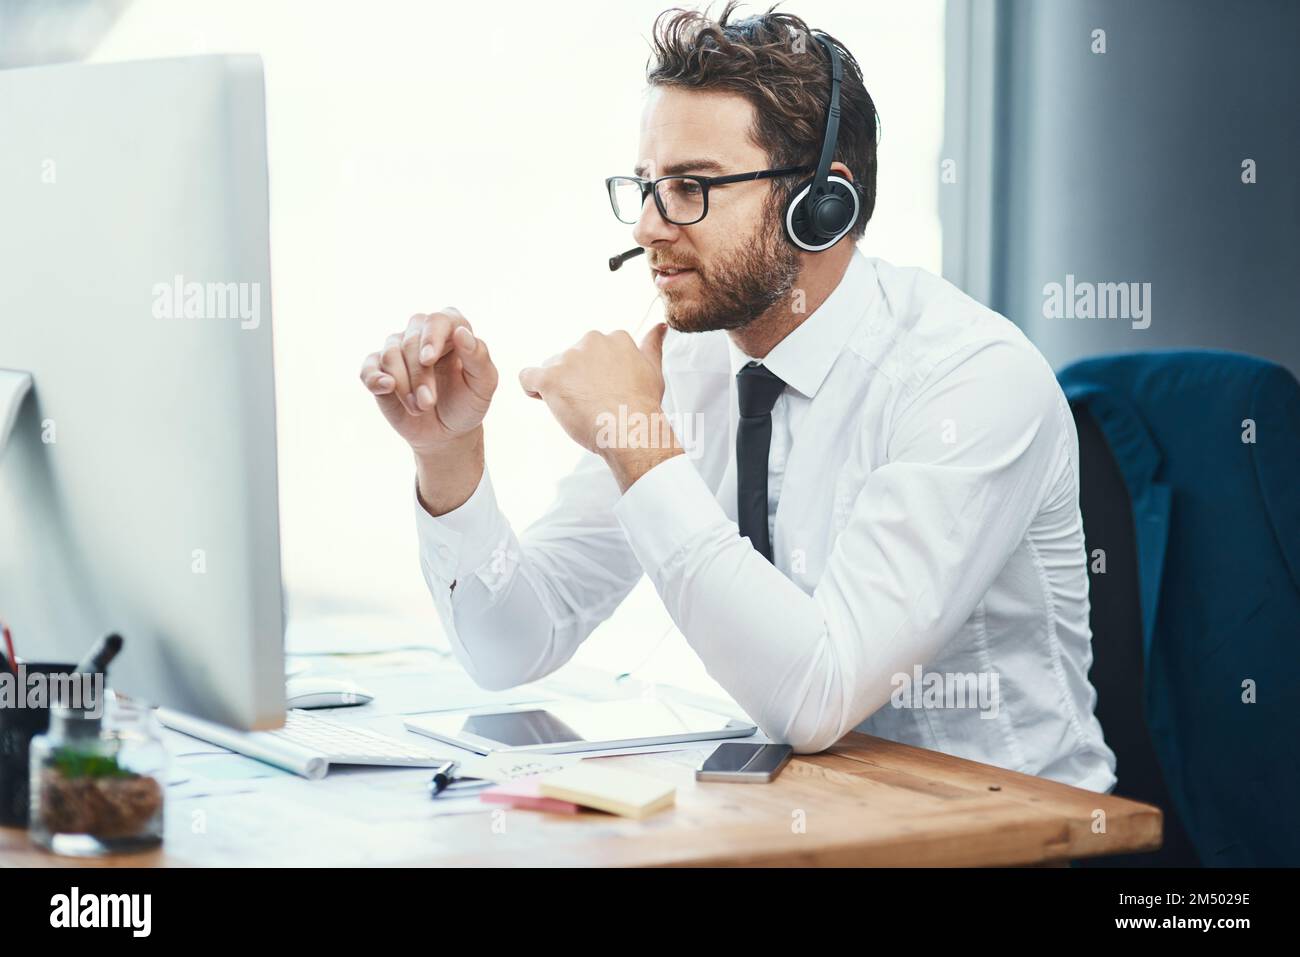 Seinen Klienten sorgfältige Ratschläge geben. Ein Callcenter-Agent, der in einem Büro arbeitet. Stockfoto